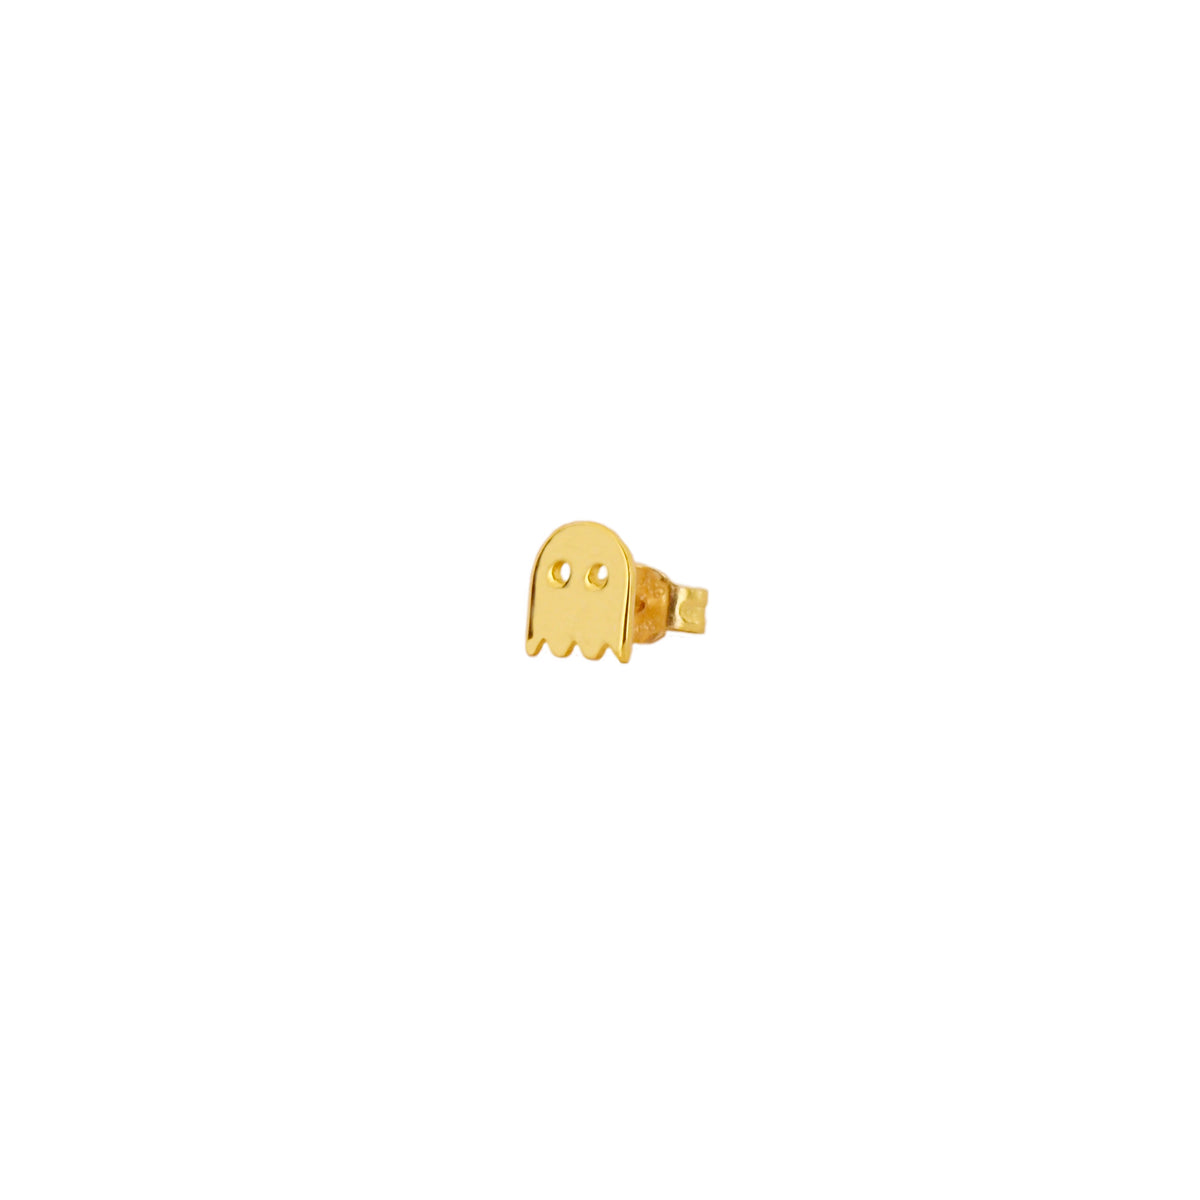 Pac-man gold - ByMirelae